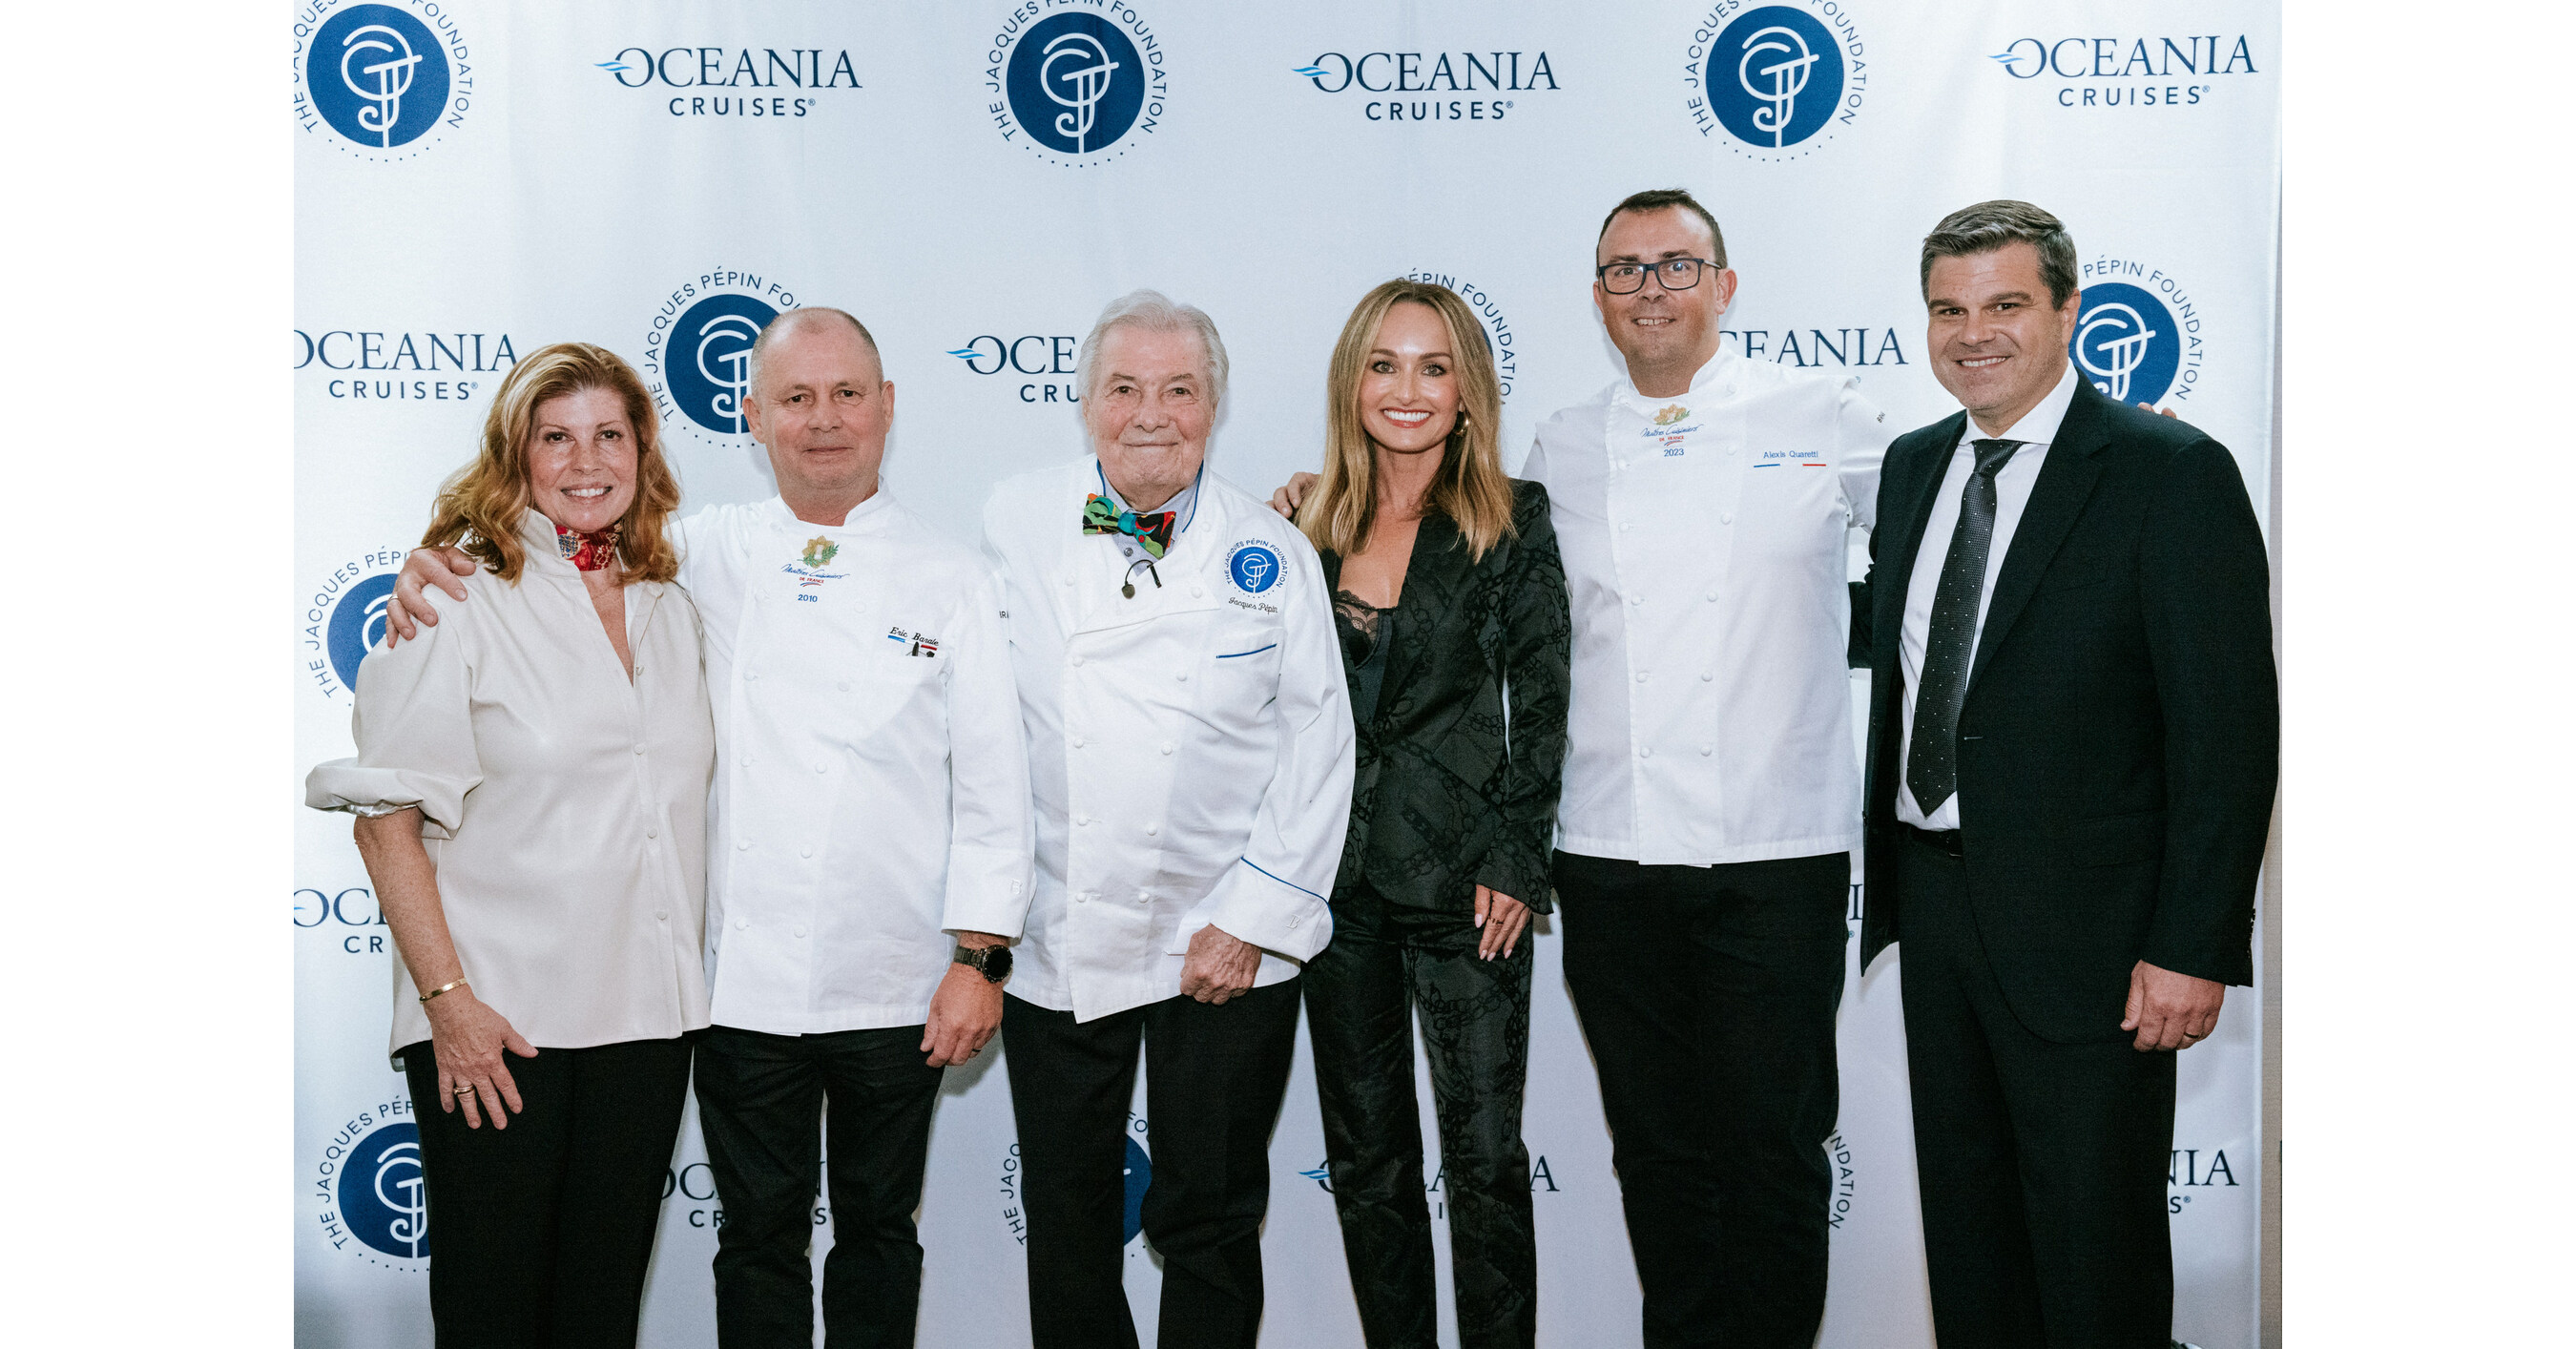 Oceania Cruises Announces Giada De Laurentiis as Brand and Culinary  Ambassador